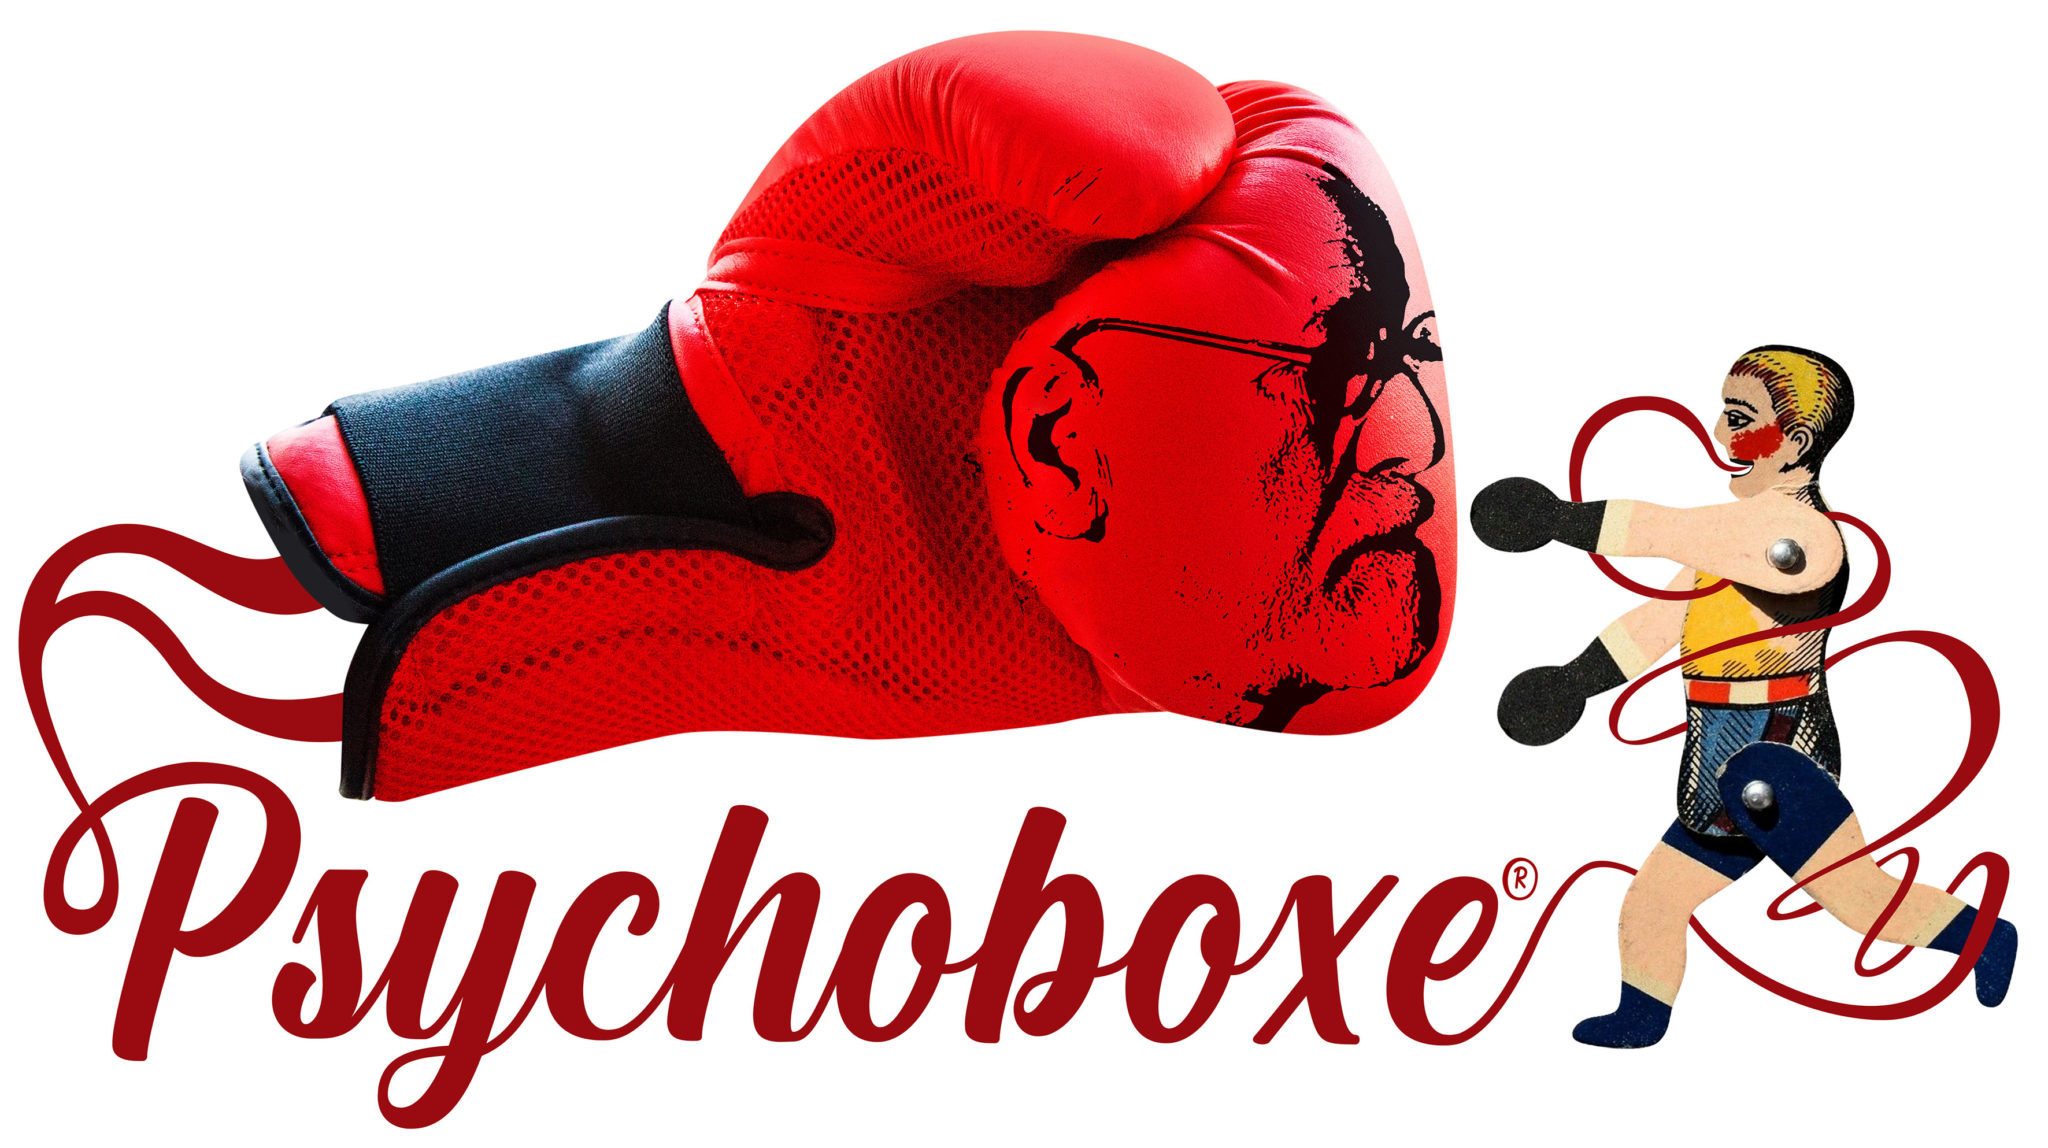 sc synergie illustration psychoboxe avec visage de Freud sur gant de boxe et mot psuchoboxe image non libre de droits